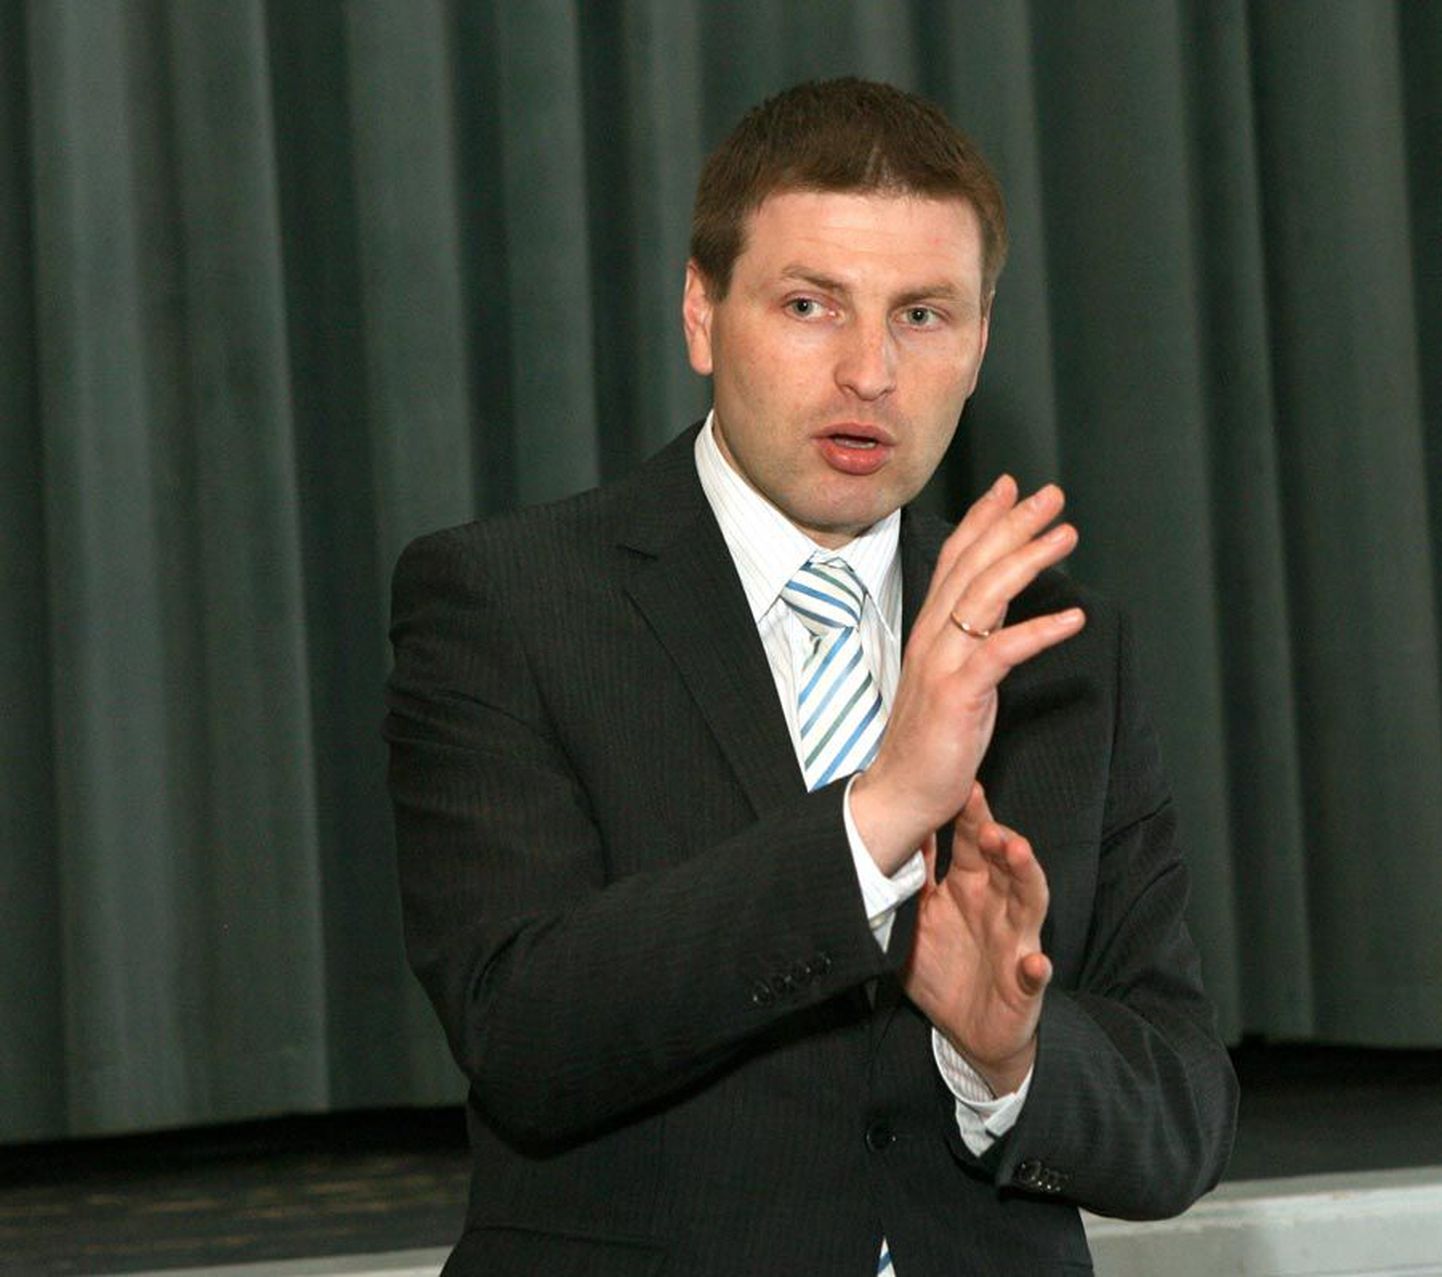 Sotsiaalminister Hanno Pevkur märkis, et mõistlikum on laua taga asju arutada kui meedia kaudu ultimaatumeid esitada.